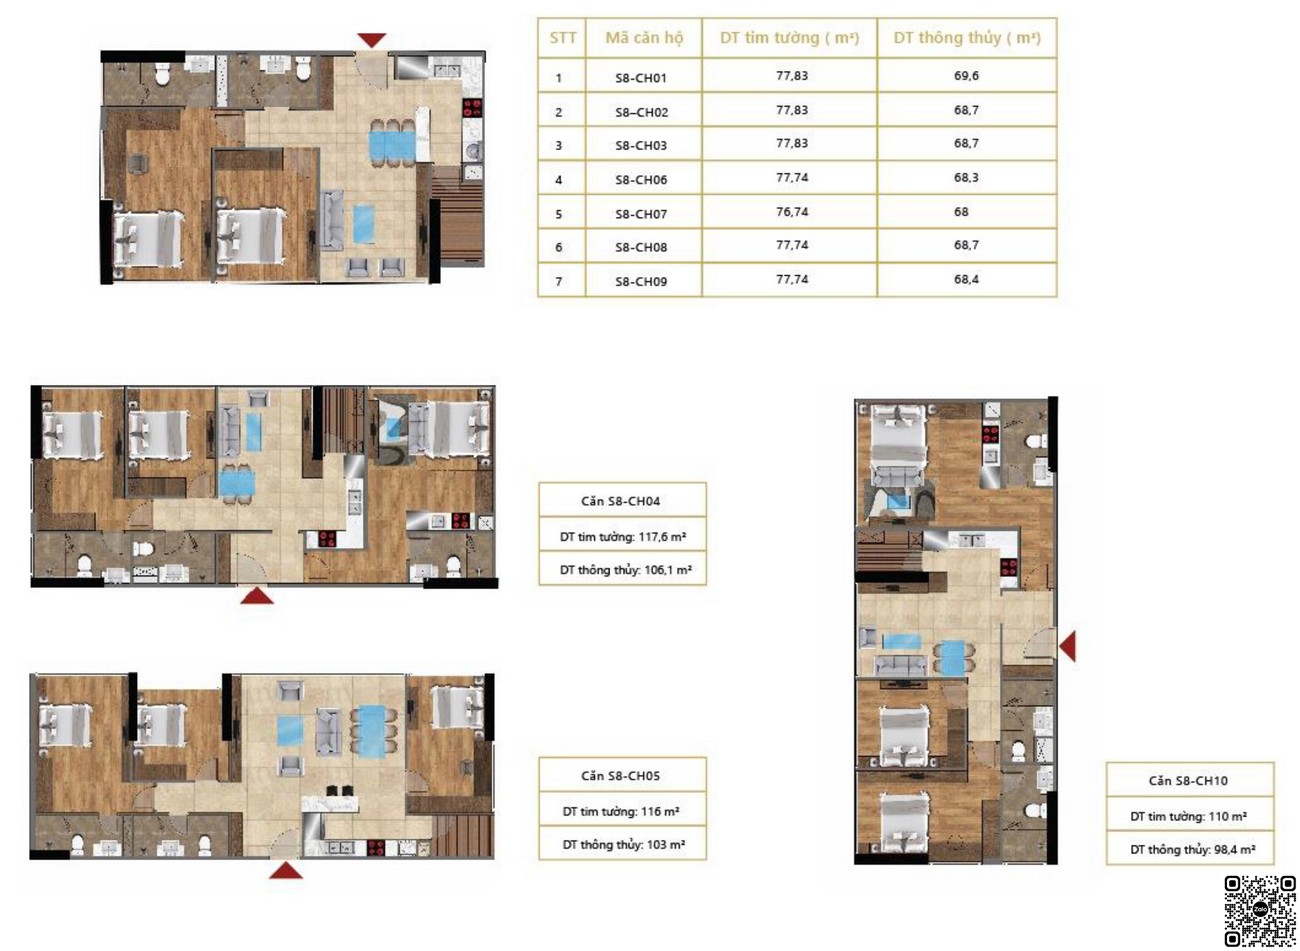 Thiết kế căn hộ diện tích 77,83m² - 117,6m²